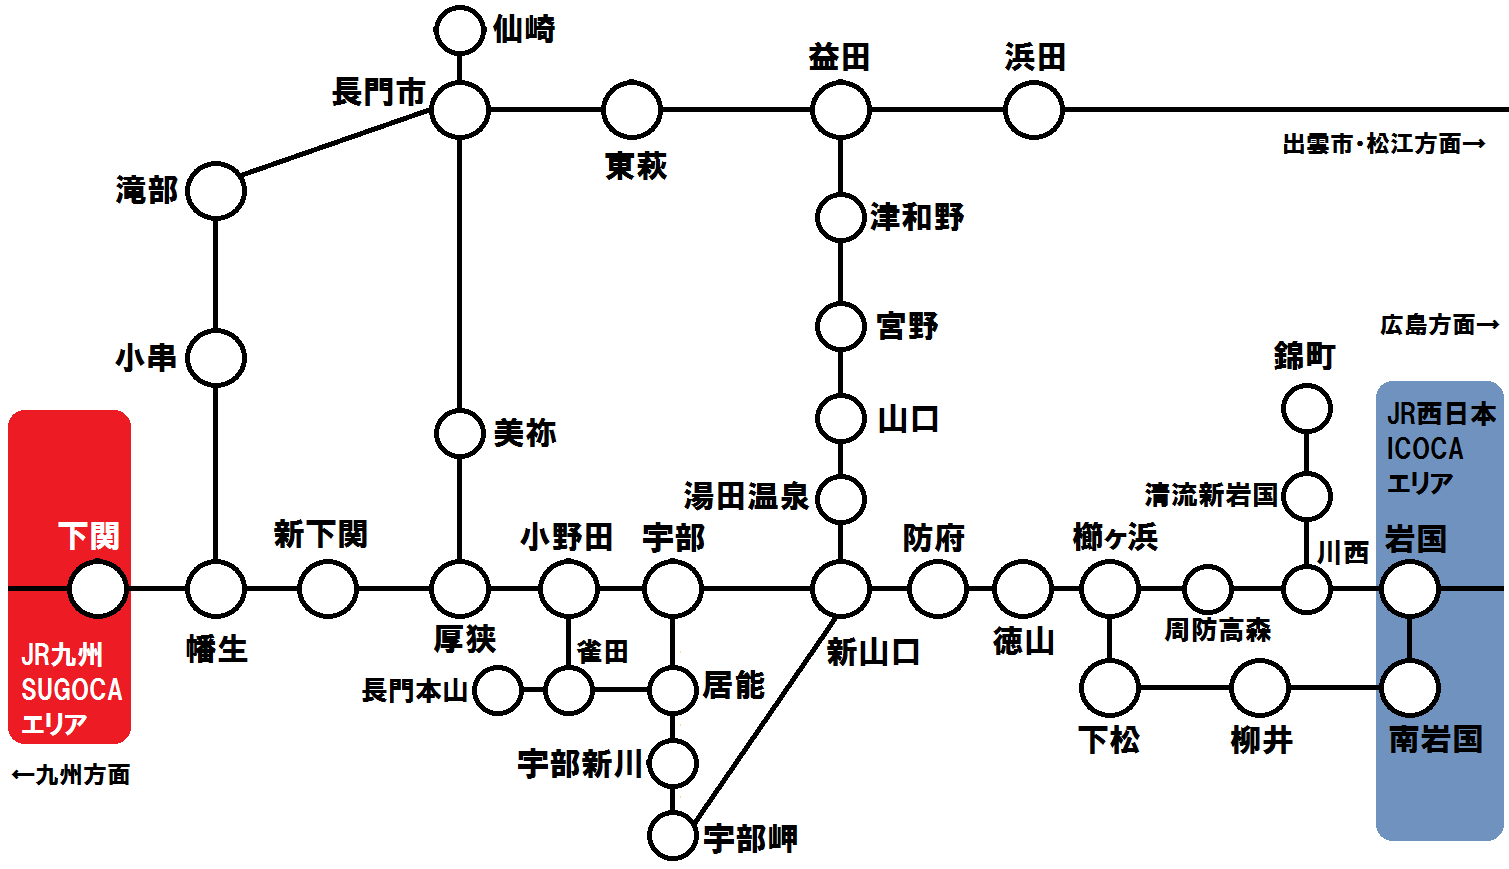 山口県内 鉄道路線図